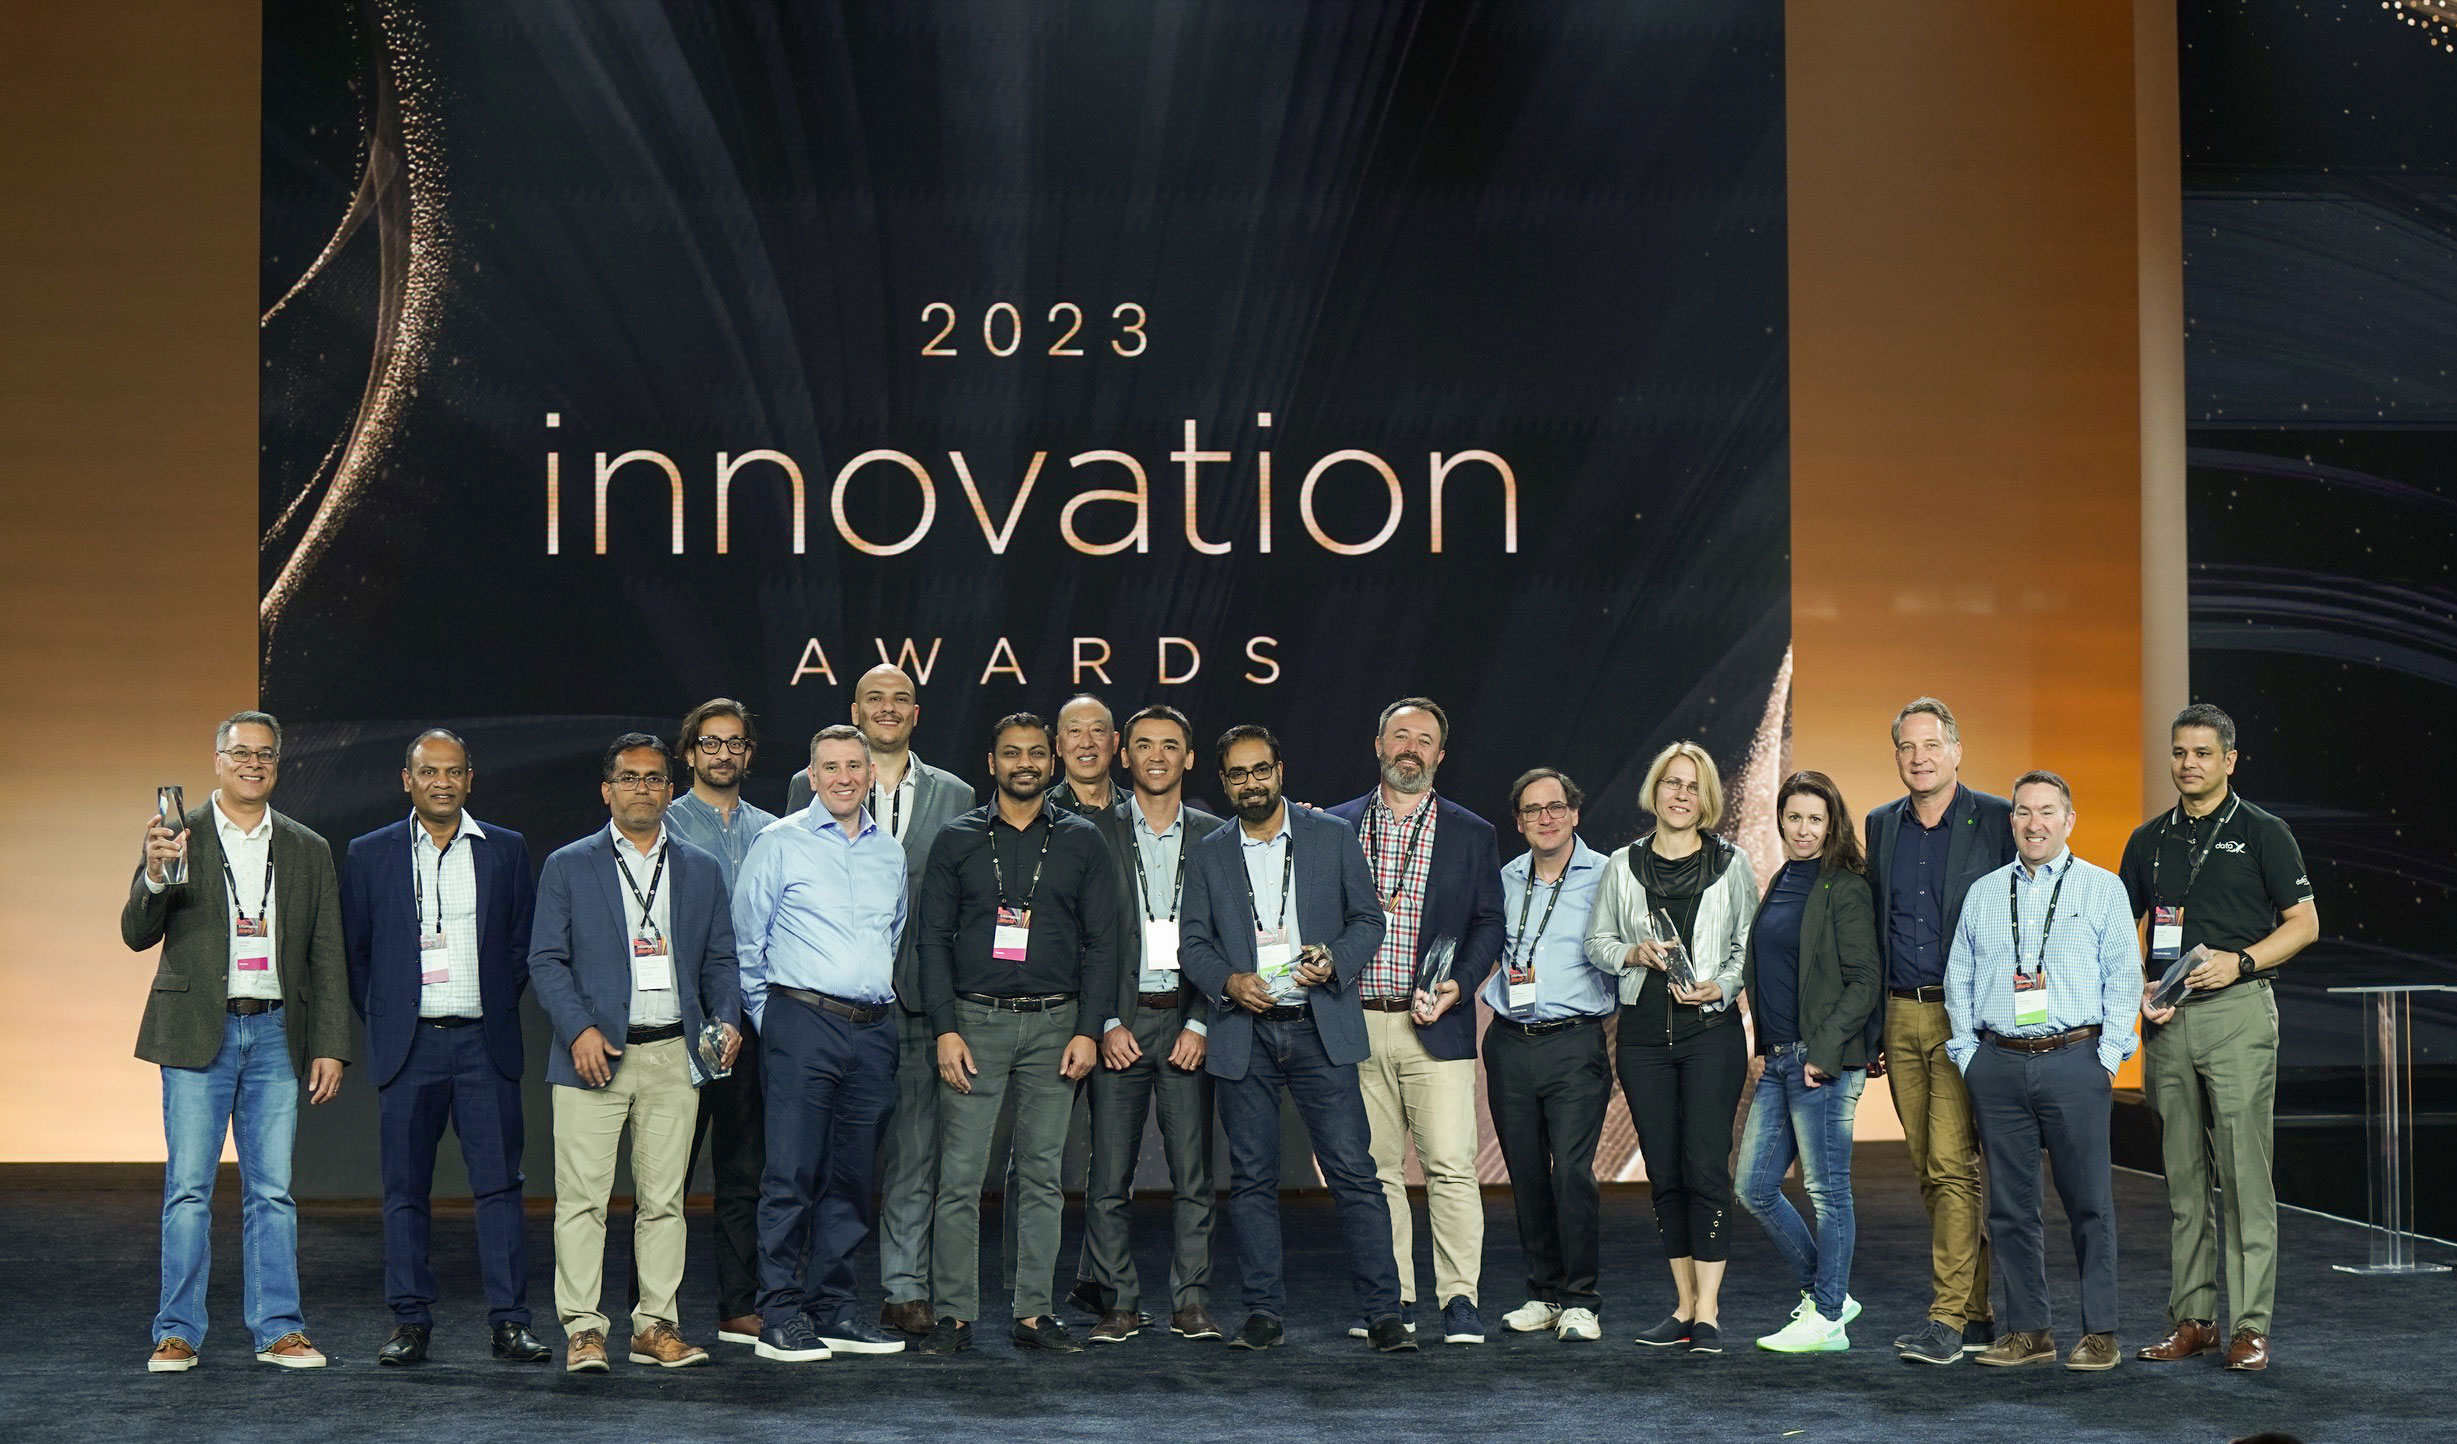 2023 Innovation awards